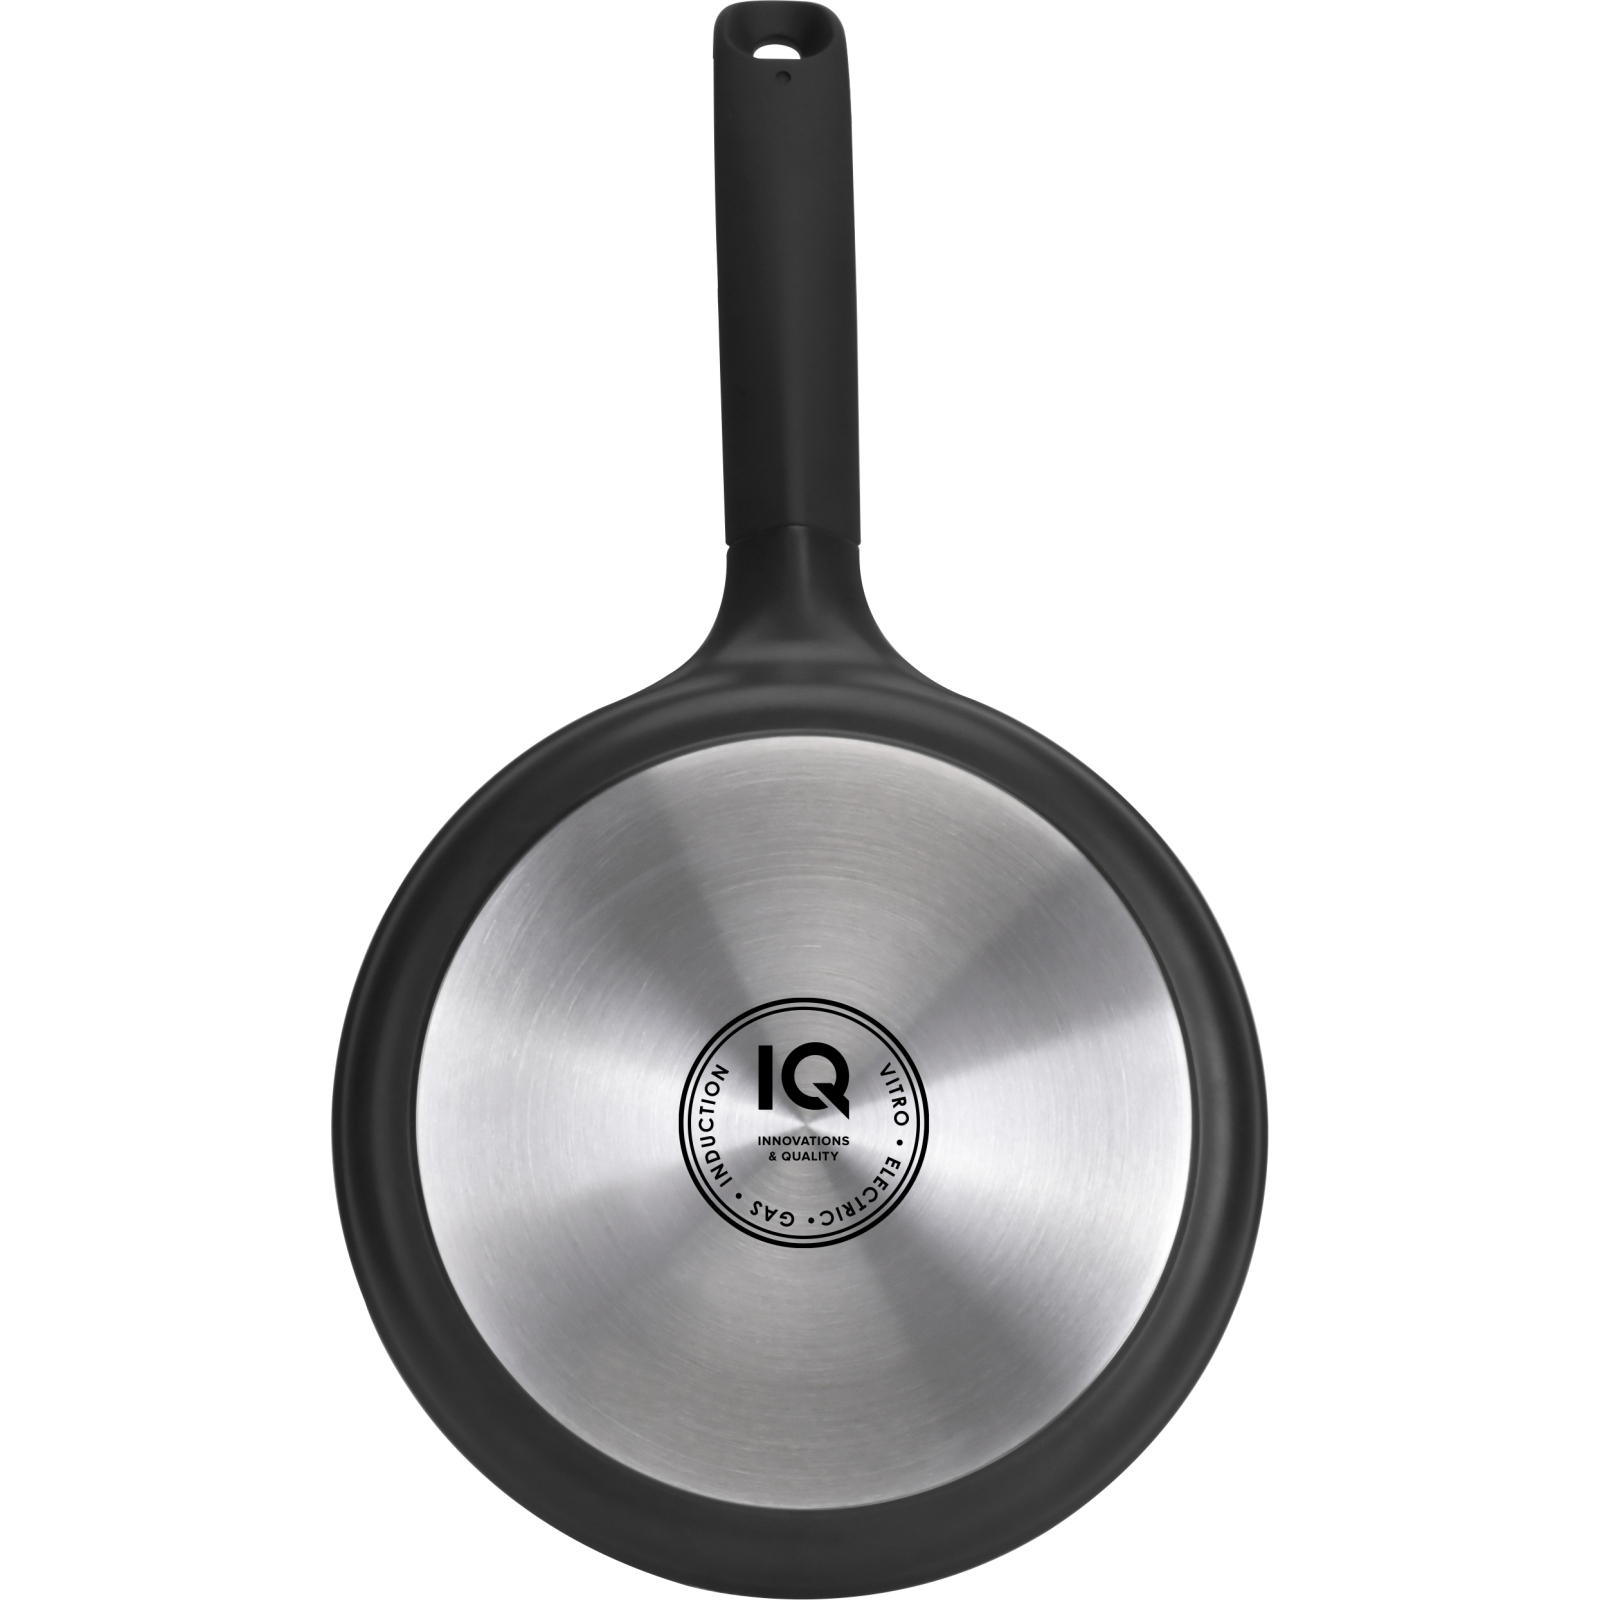 Сковорода IQ Be Chef універсальна 20 см (IQ-1144-20) зображення 5